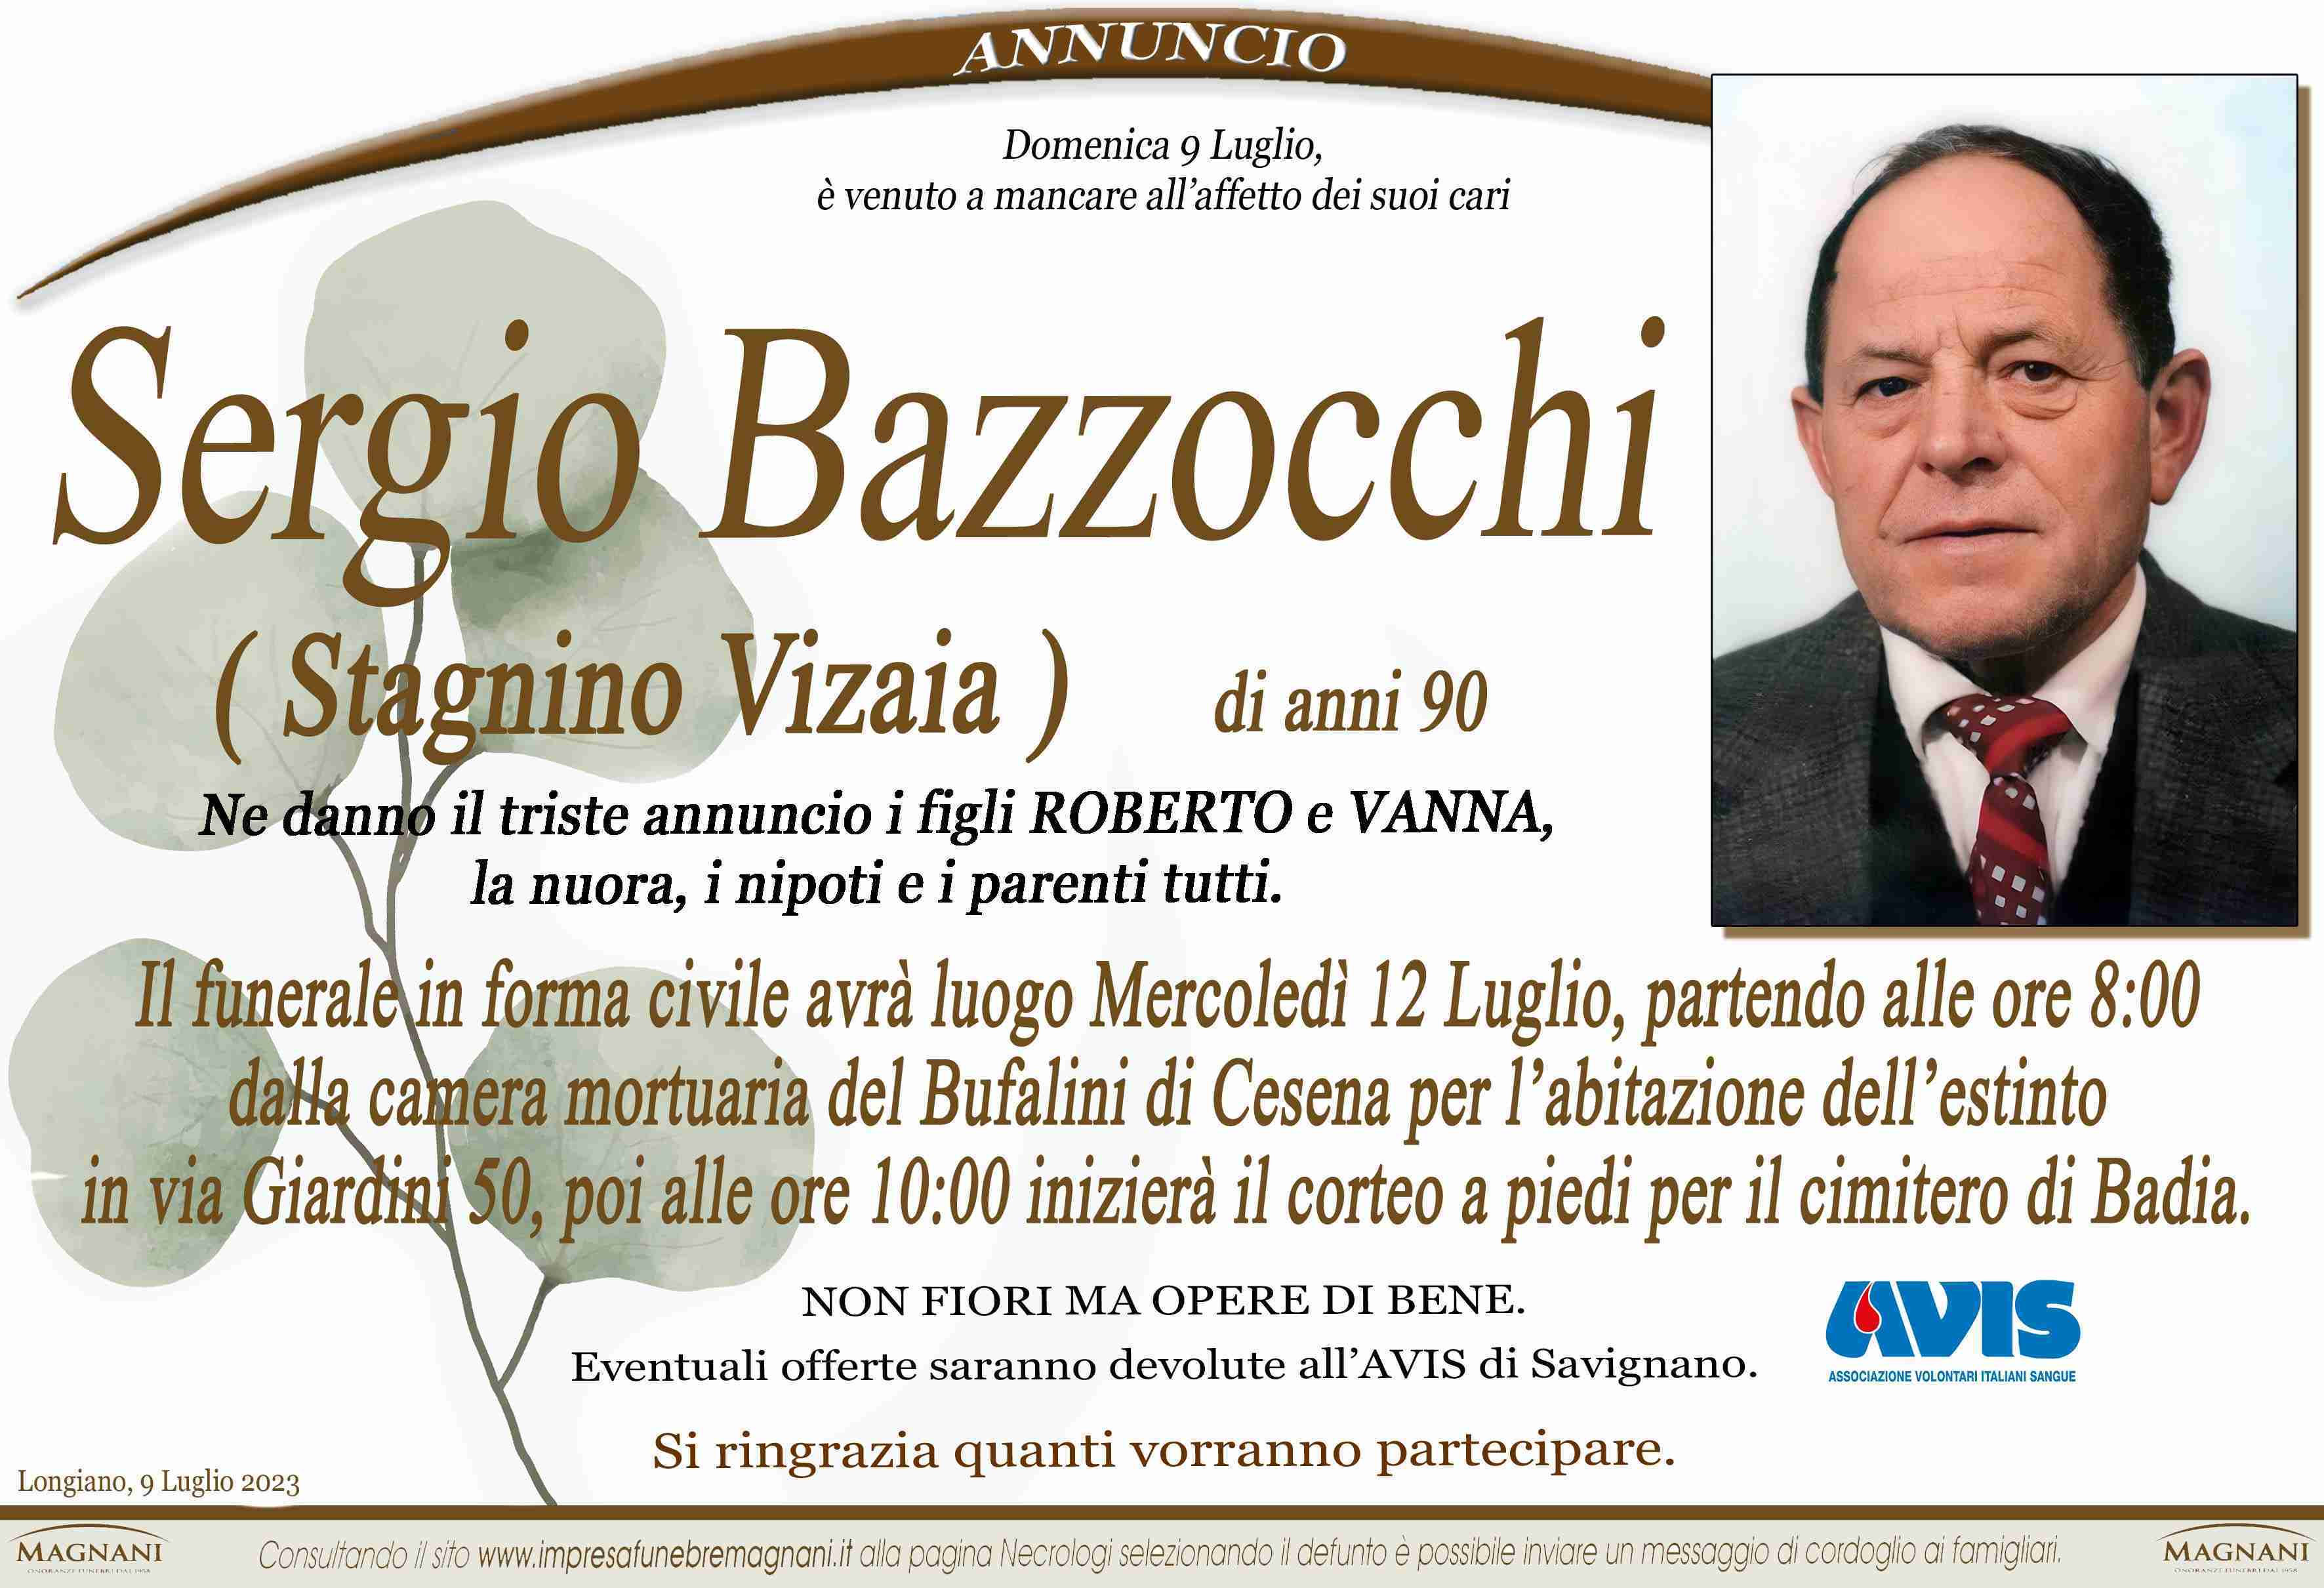 Sergio Bazzocchi